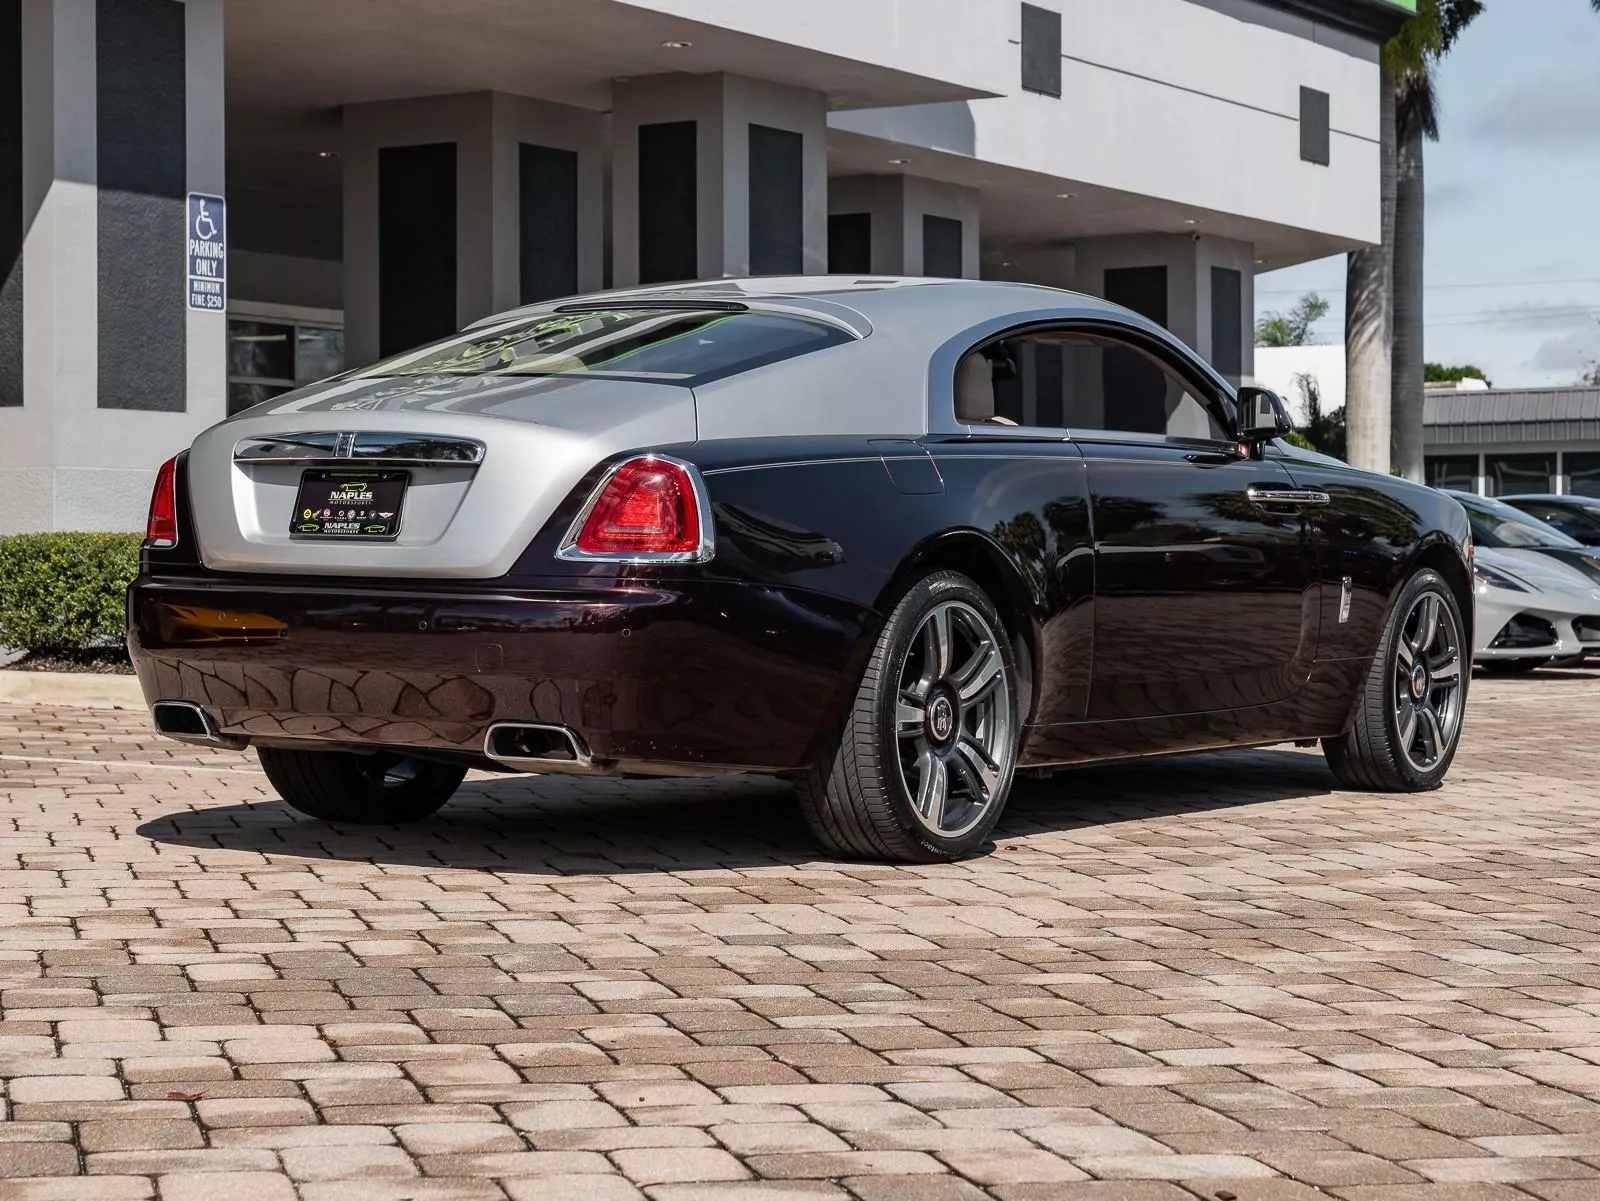 Гиперкар Bugatti выставили на продажу в комплекте с купе Rolls-Royce8